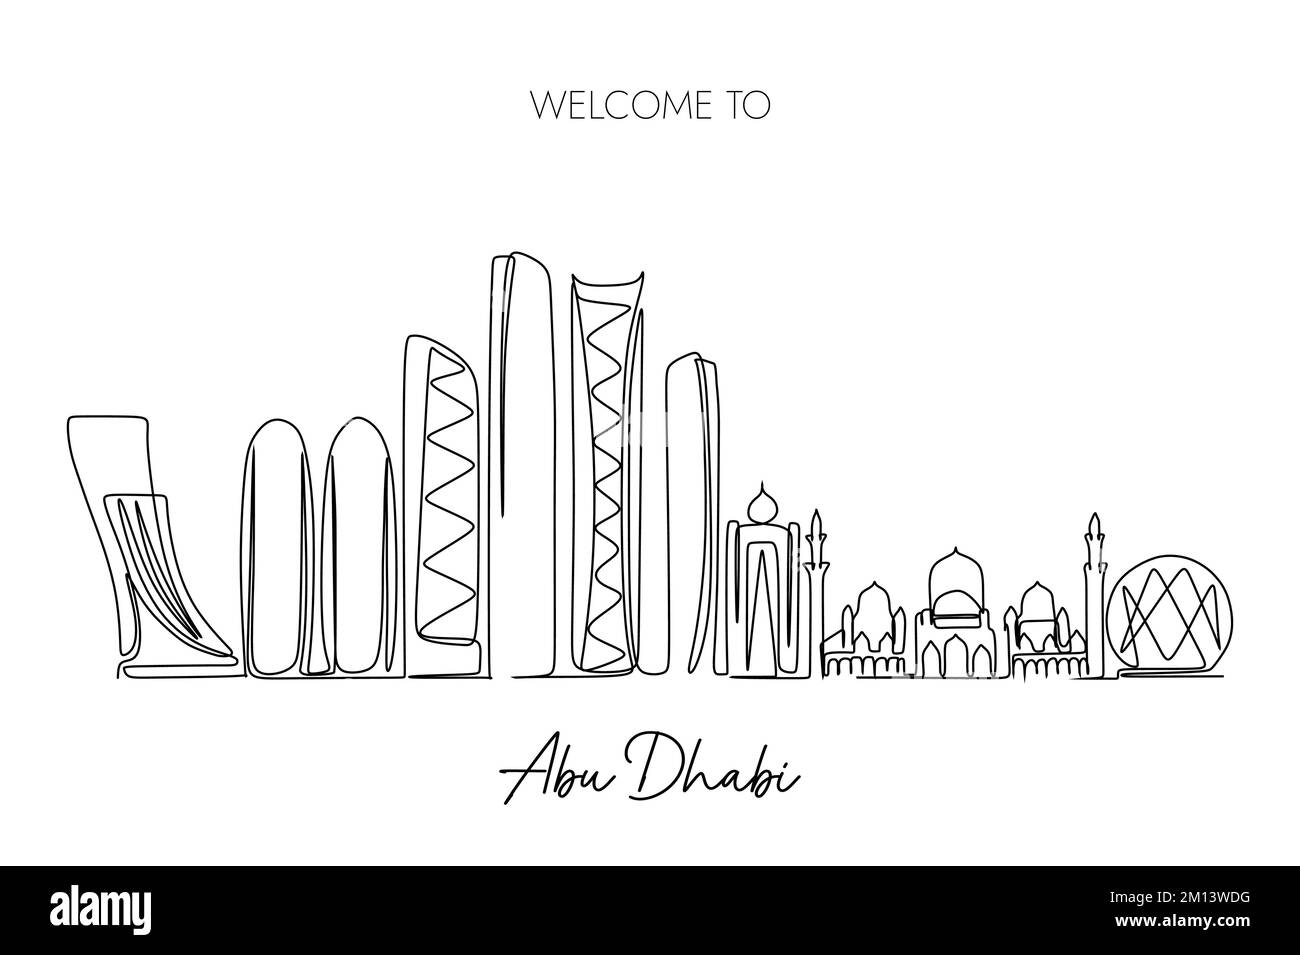 Un disegno a linea continua dello skyline della città di Abu Dhabi. Destinazione turistica famosa in tutto il mondo. Design semplice e disegnato a mano per viaggi e turismo Illustrazione Vettoriale